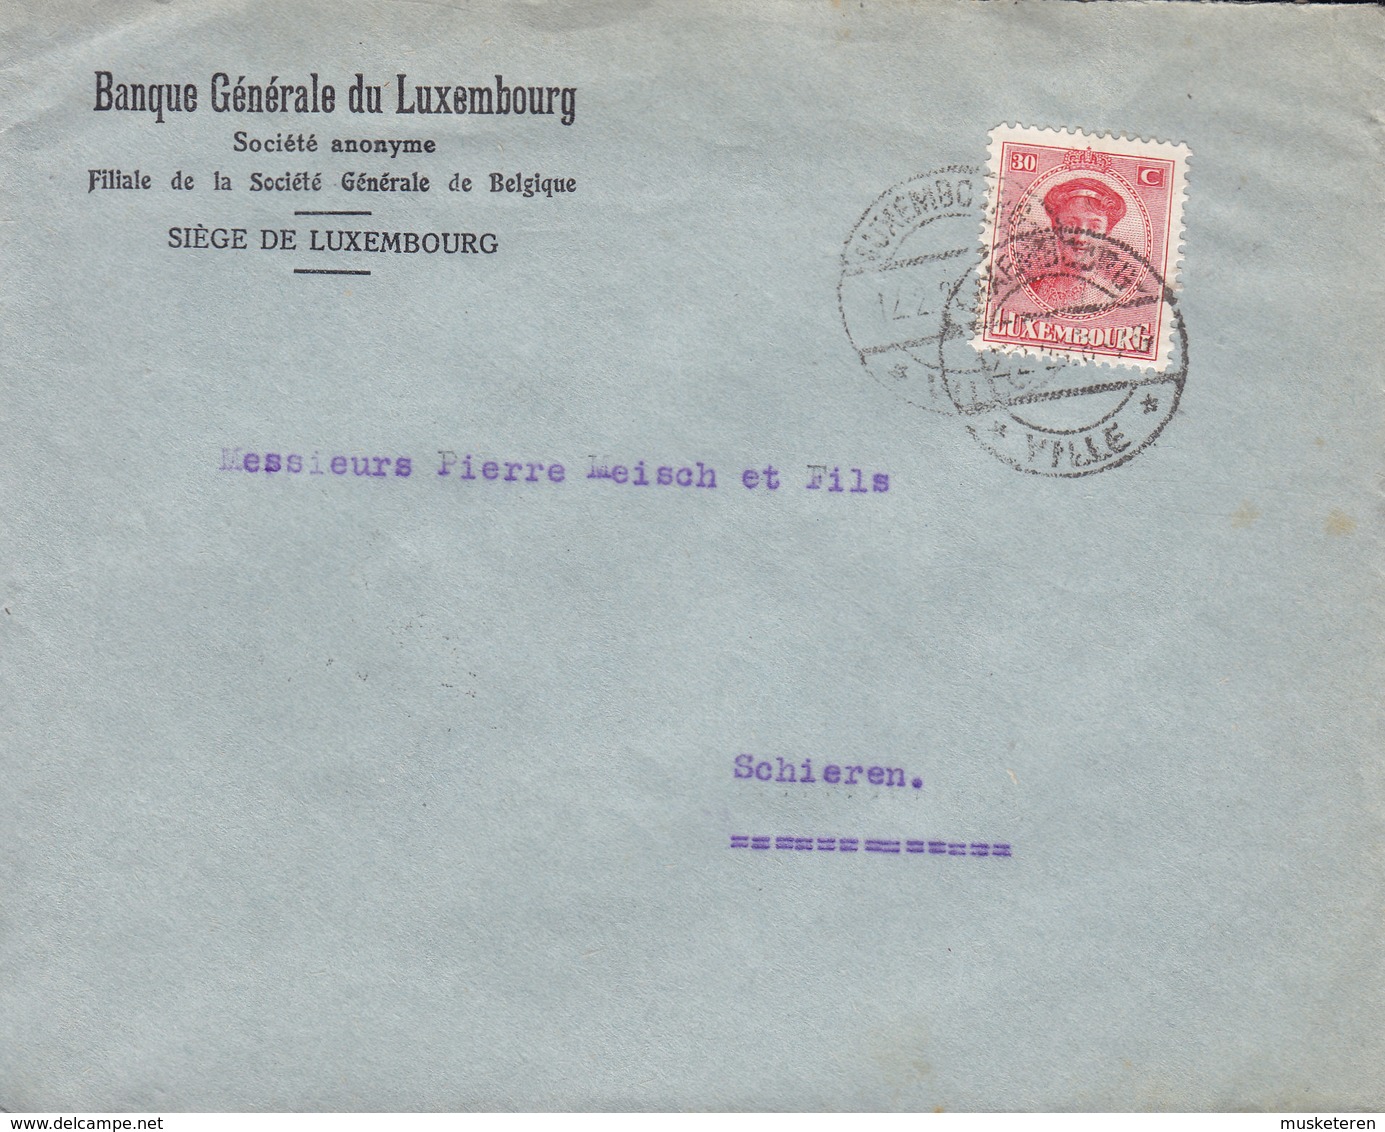 Luxembourg BANQUE GÉNÉRALE DU LUXEMBOURG, LUXEMBOURG VILLE 1926 Cover Lettre SHIEREN, ETTELBRÜCK (Arr. Cds.) - Lettres & Documents